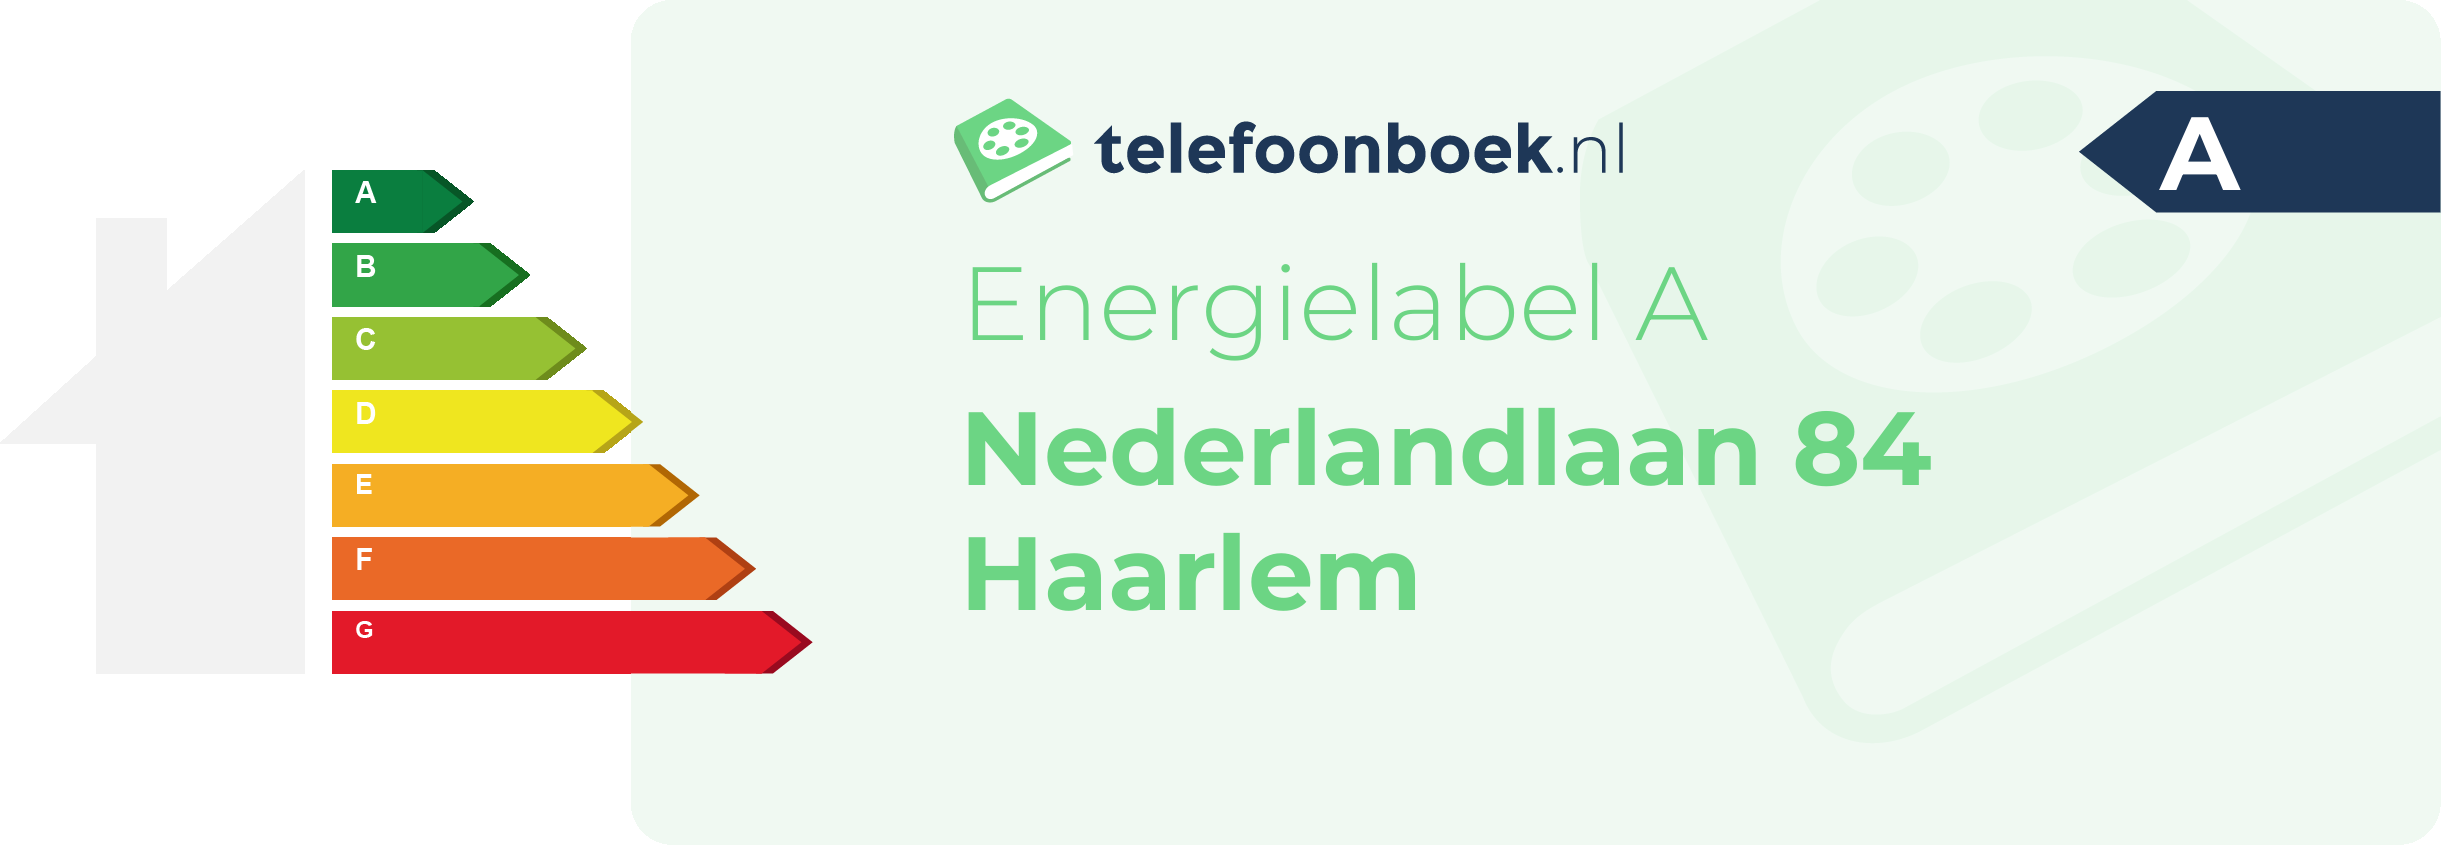 Energielabel Nederlandlaan 84 Haarlem